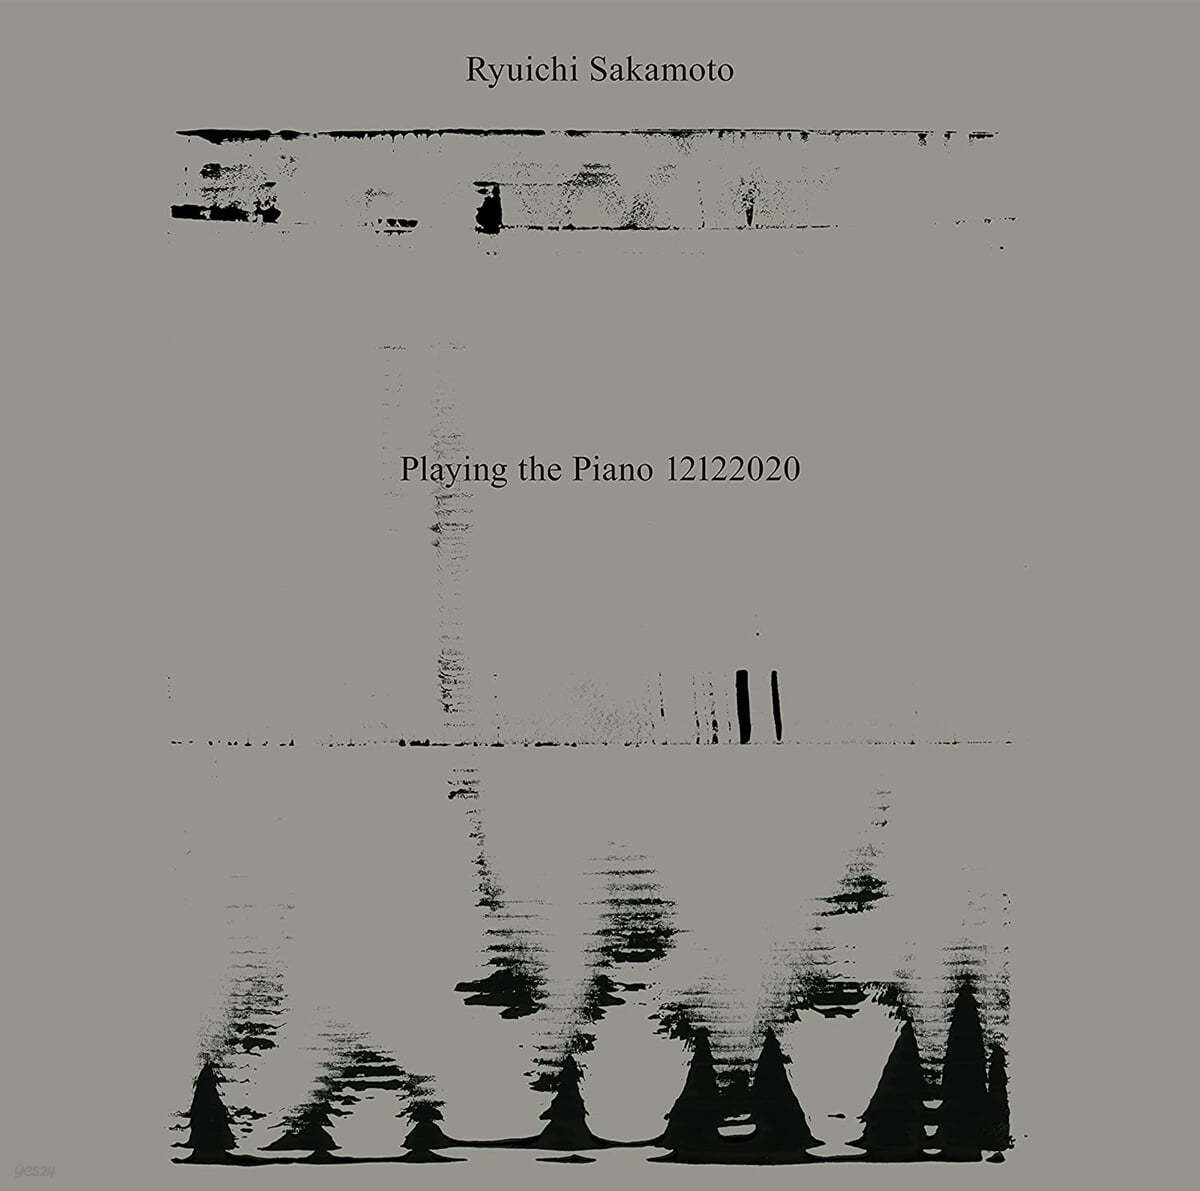 Ryuichi Sakamoto (류이치 사카모토) - Playing the Piano 12122020 [화이트 컬러 2LP] / 미개봉 새상품/자켓의 모서리 눌림이나 찍힘이 전혀 없는 완벽한 새상품/개봉 후 반품불가